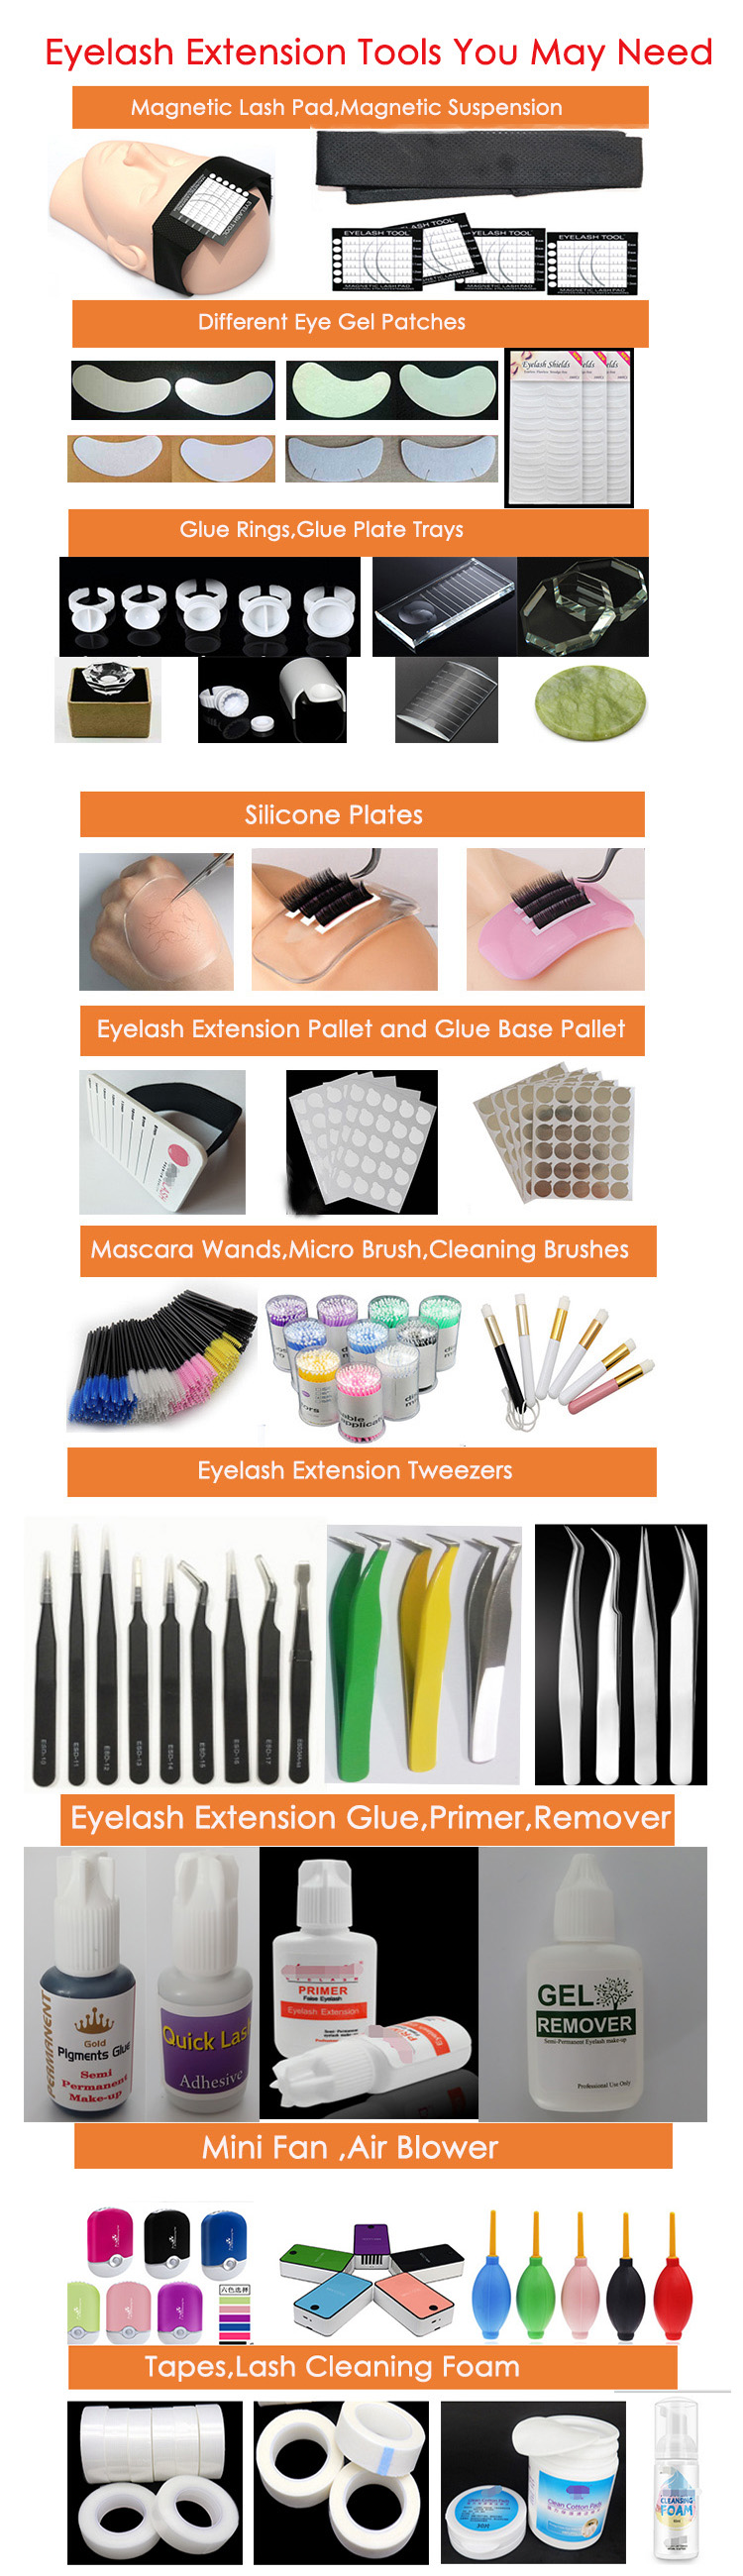 wholesale-eyelash-vendors.jpg